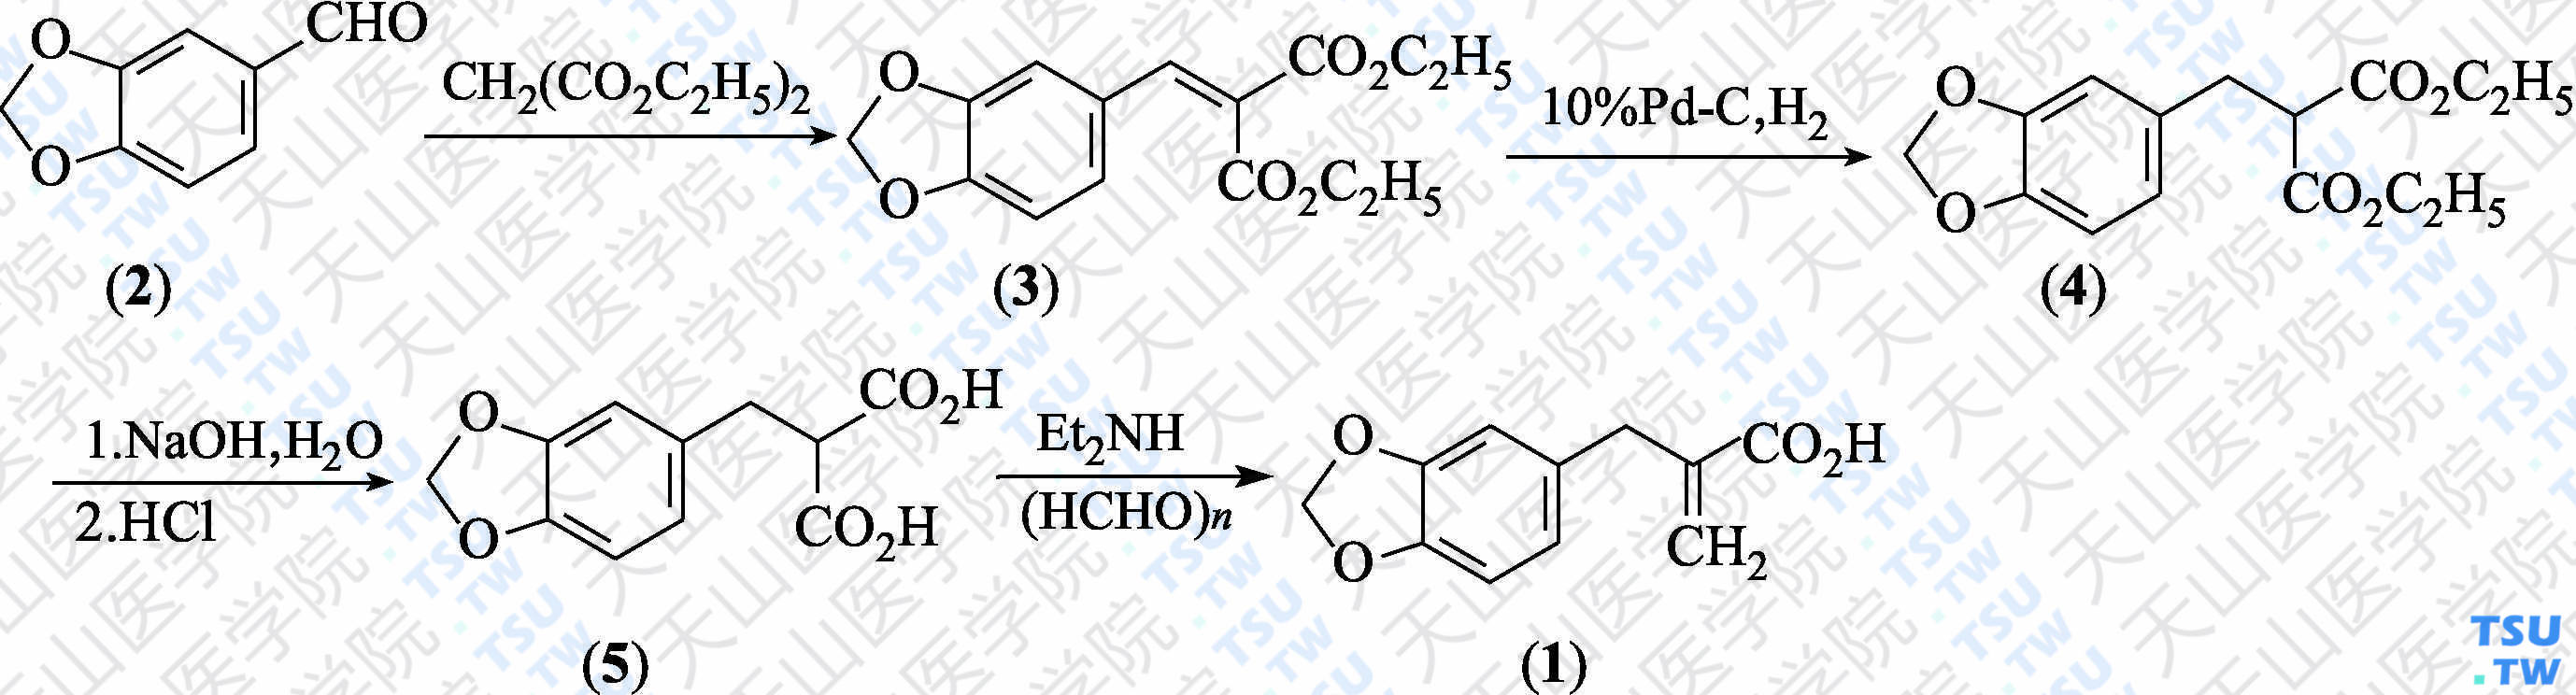 2-（3，4-亚甲二氧基苄基）丙烯酸（分子式：C<sub>11</sub>H<sub>10</sub>O<sub>4</sub>）的合成方法路线及其结构式